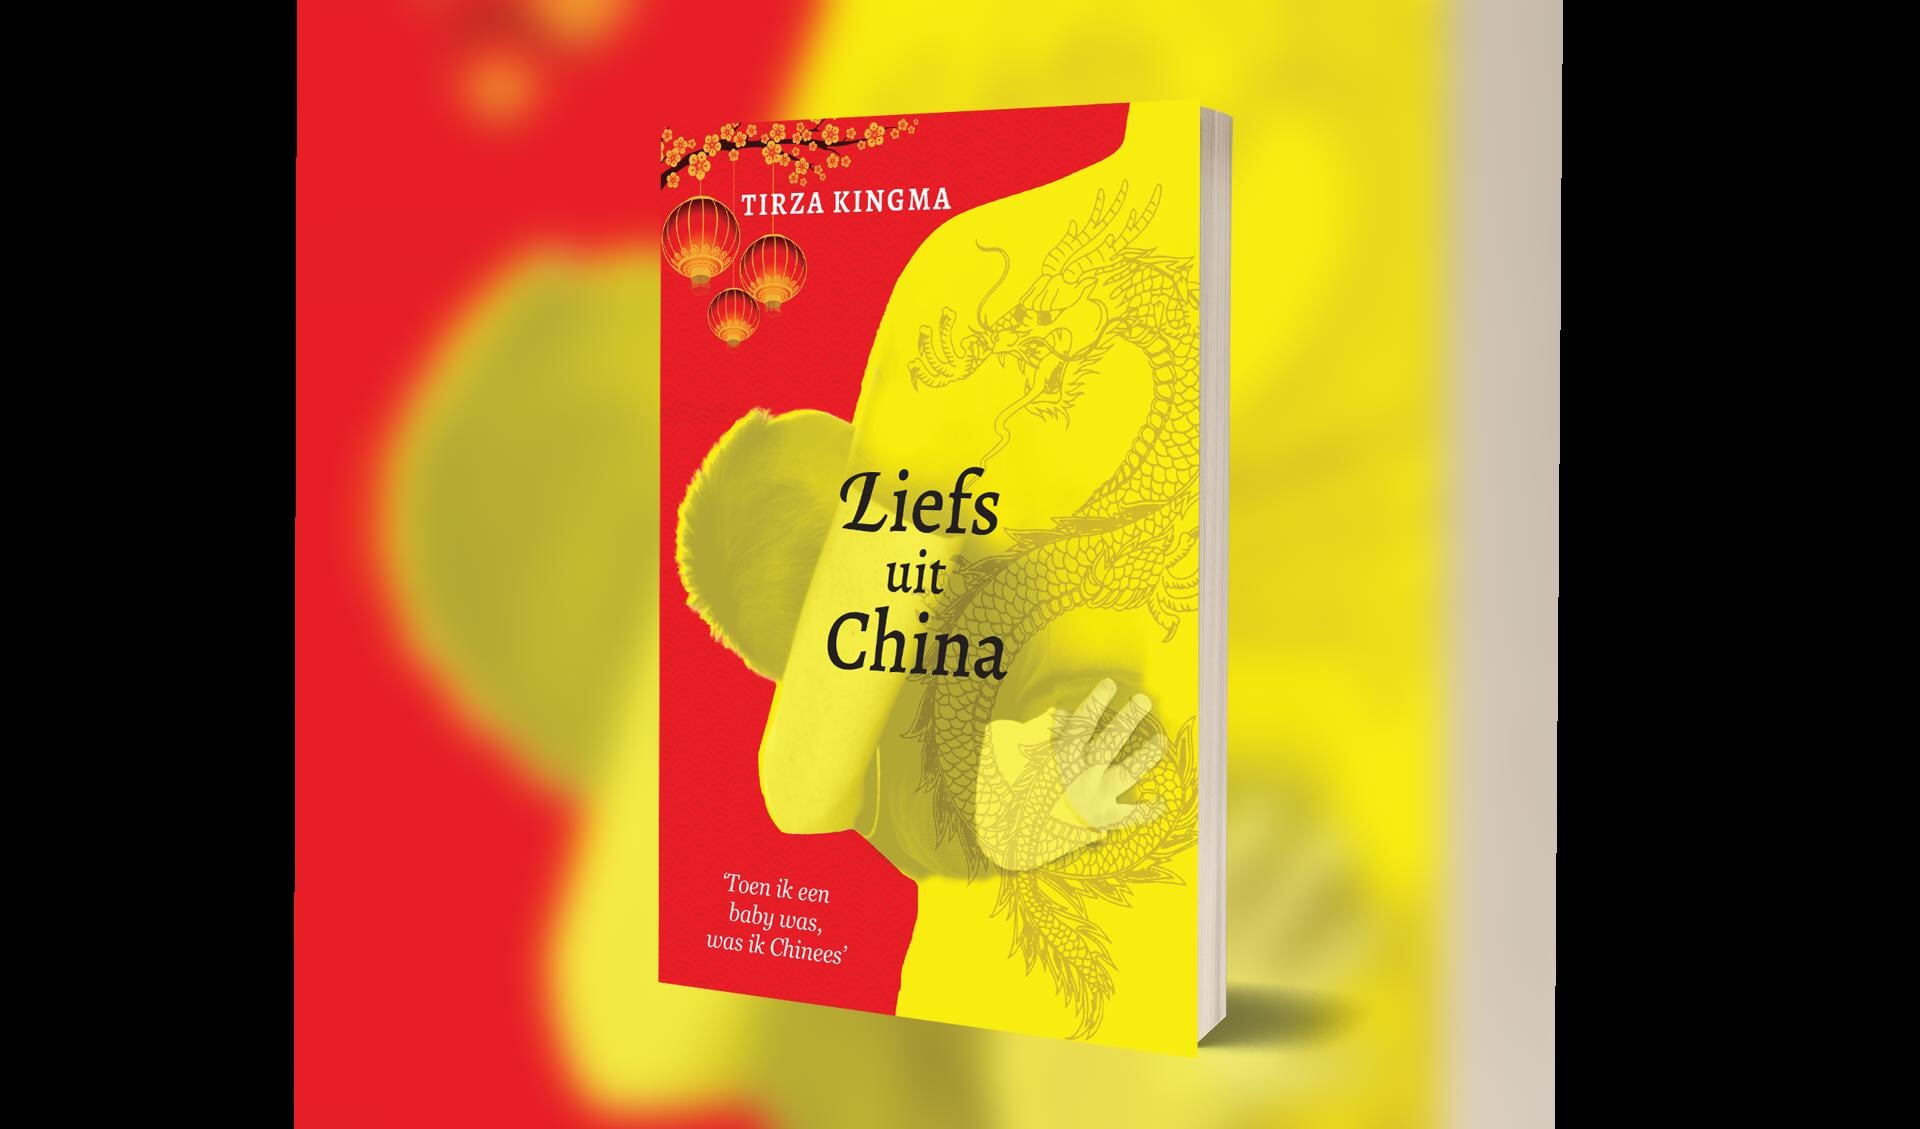 Liefs uit China is het tweede boek van Tirza Kingma